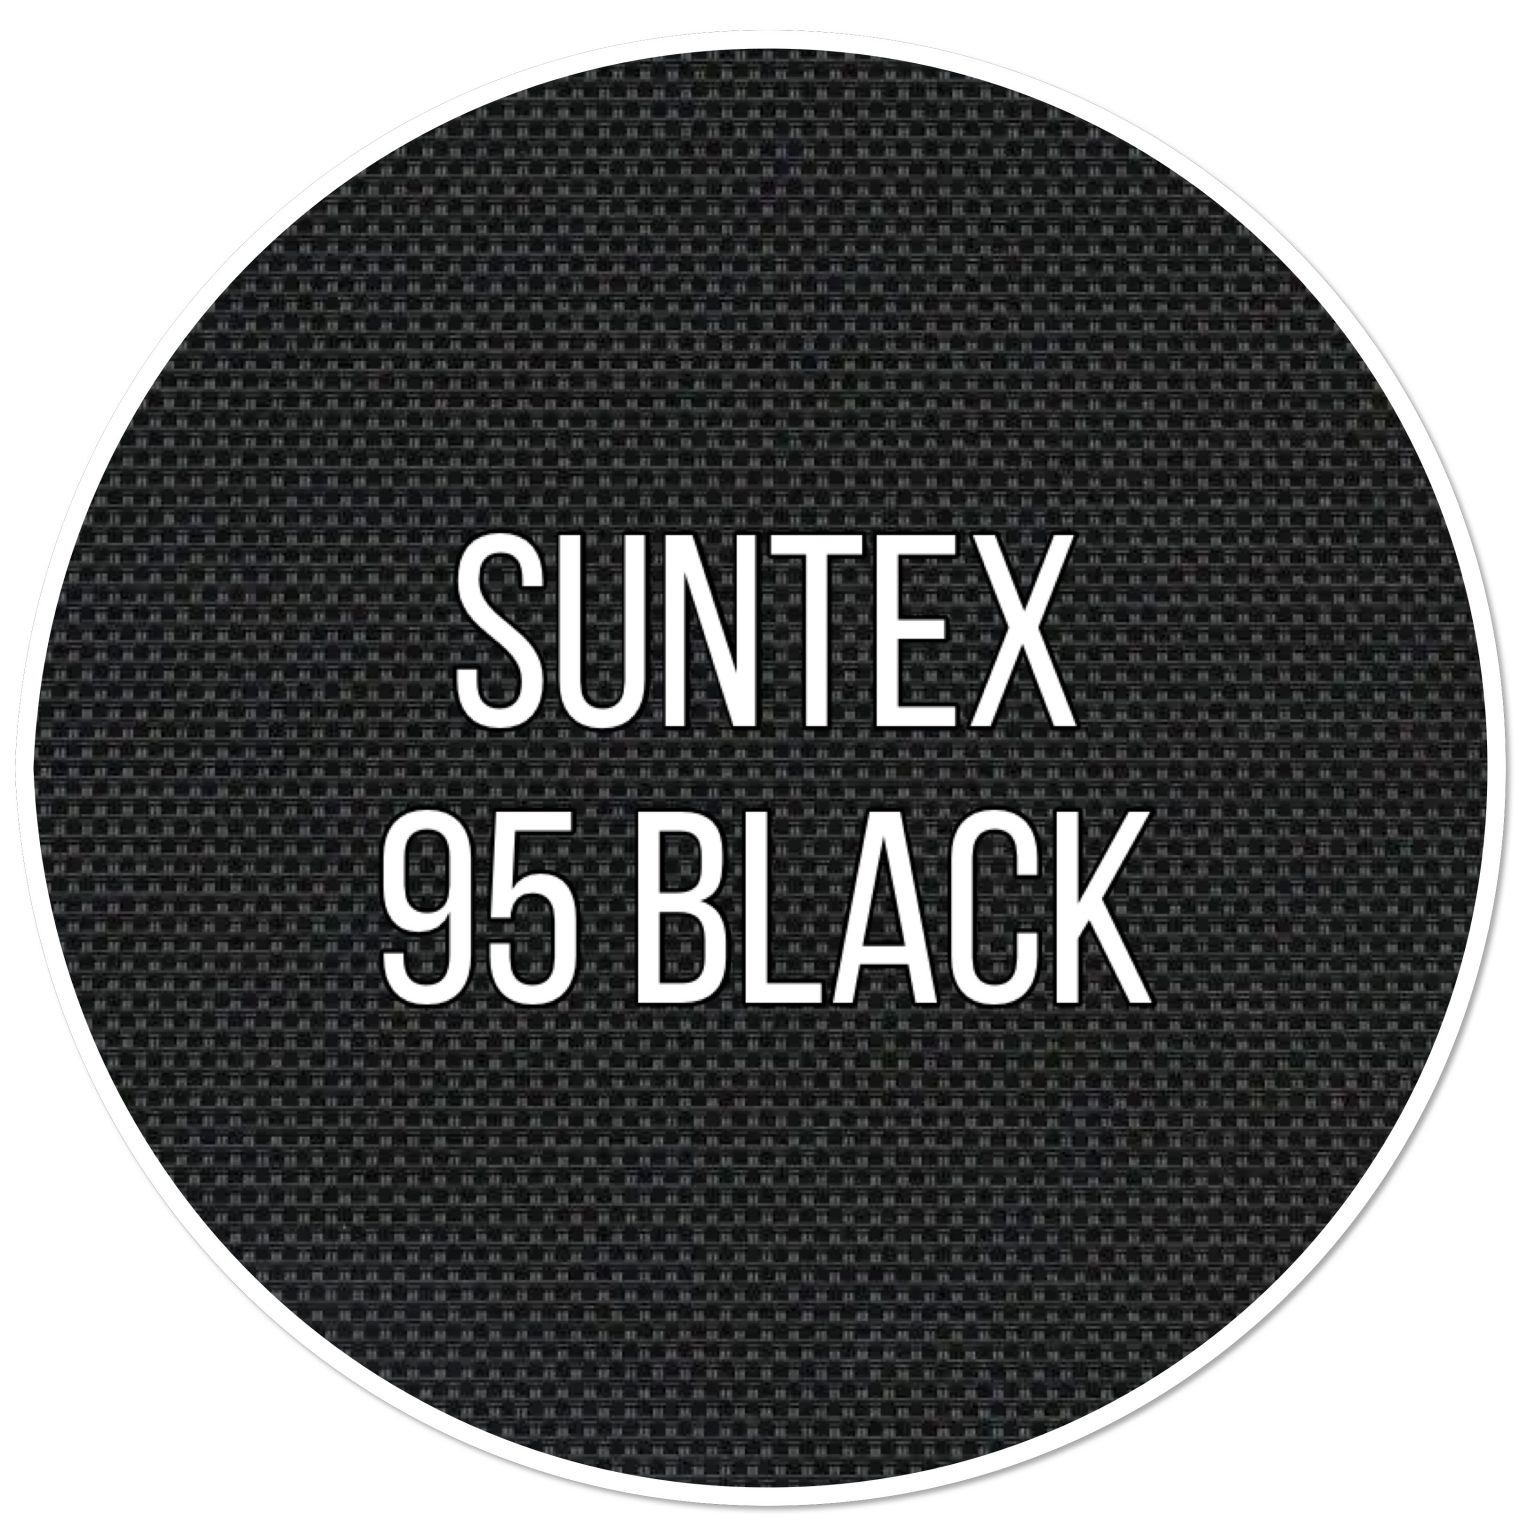 suntex 95 black